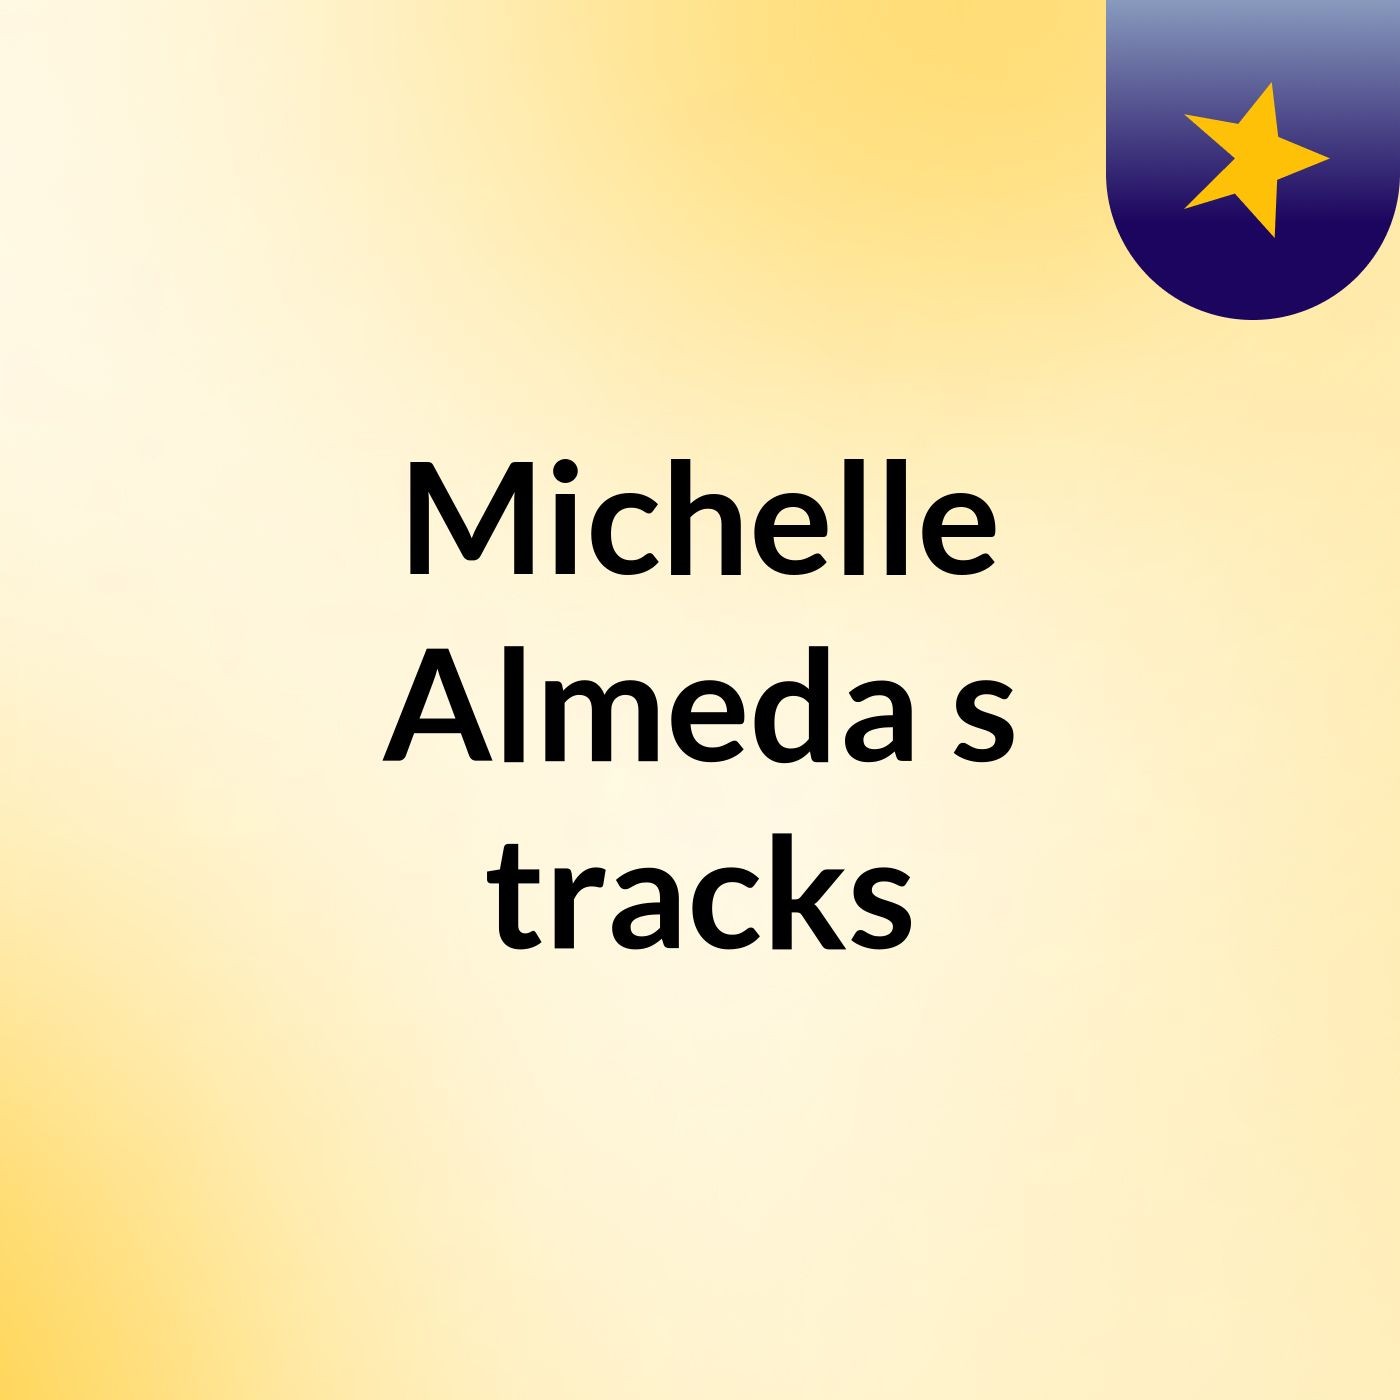 Michelle Almeda's tracks